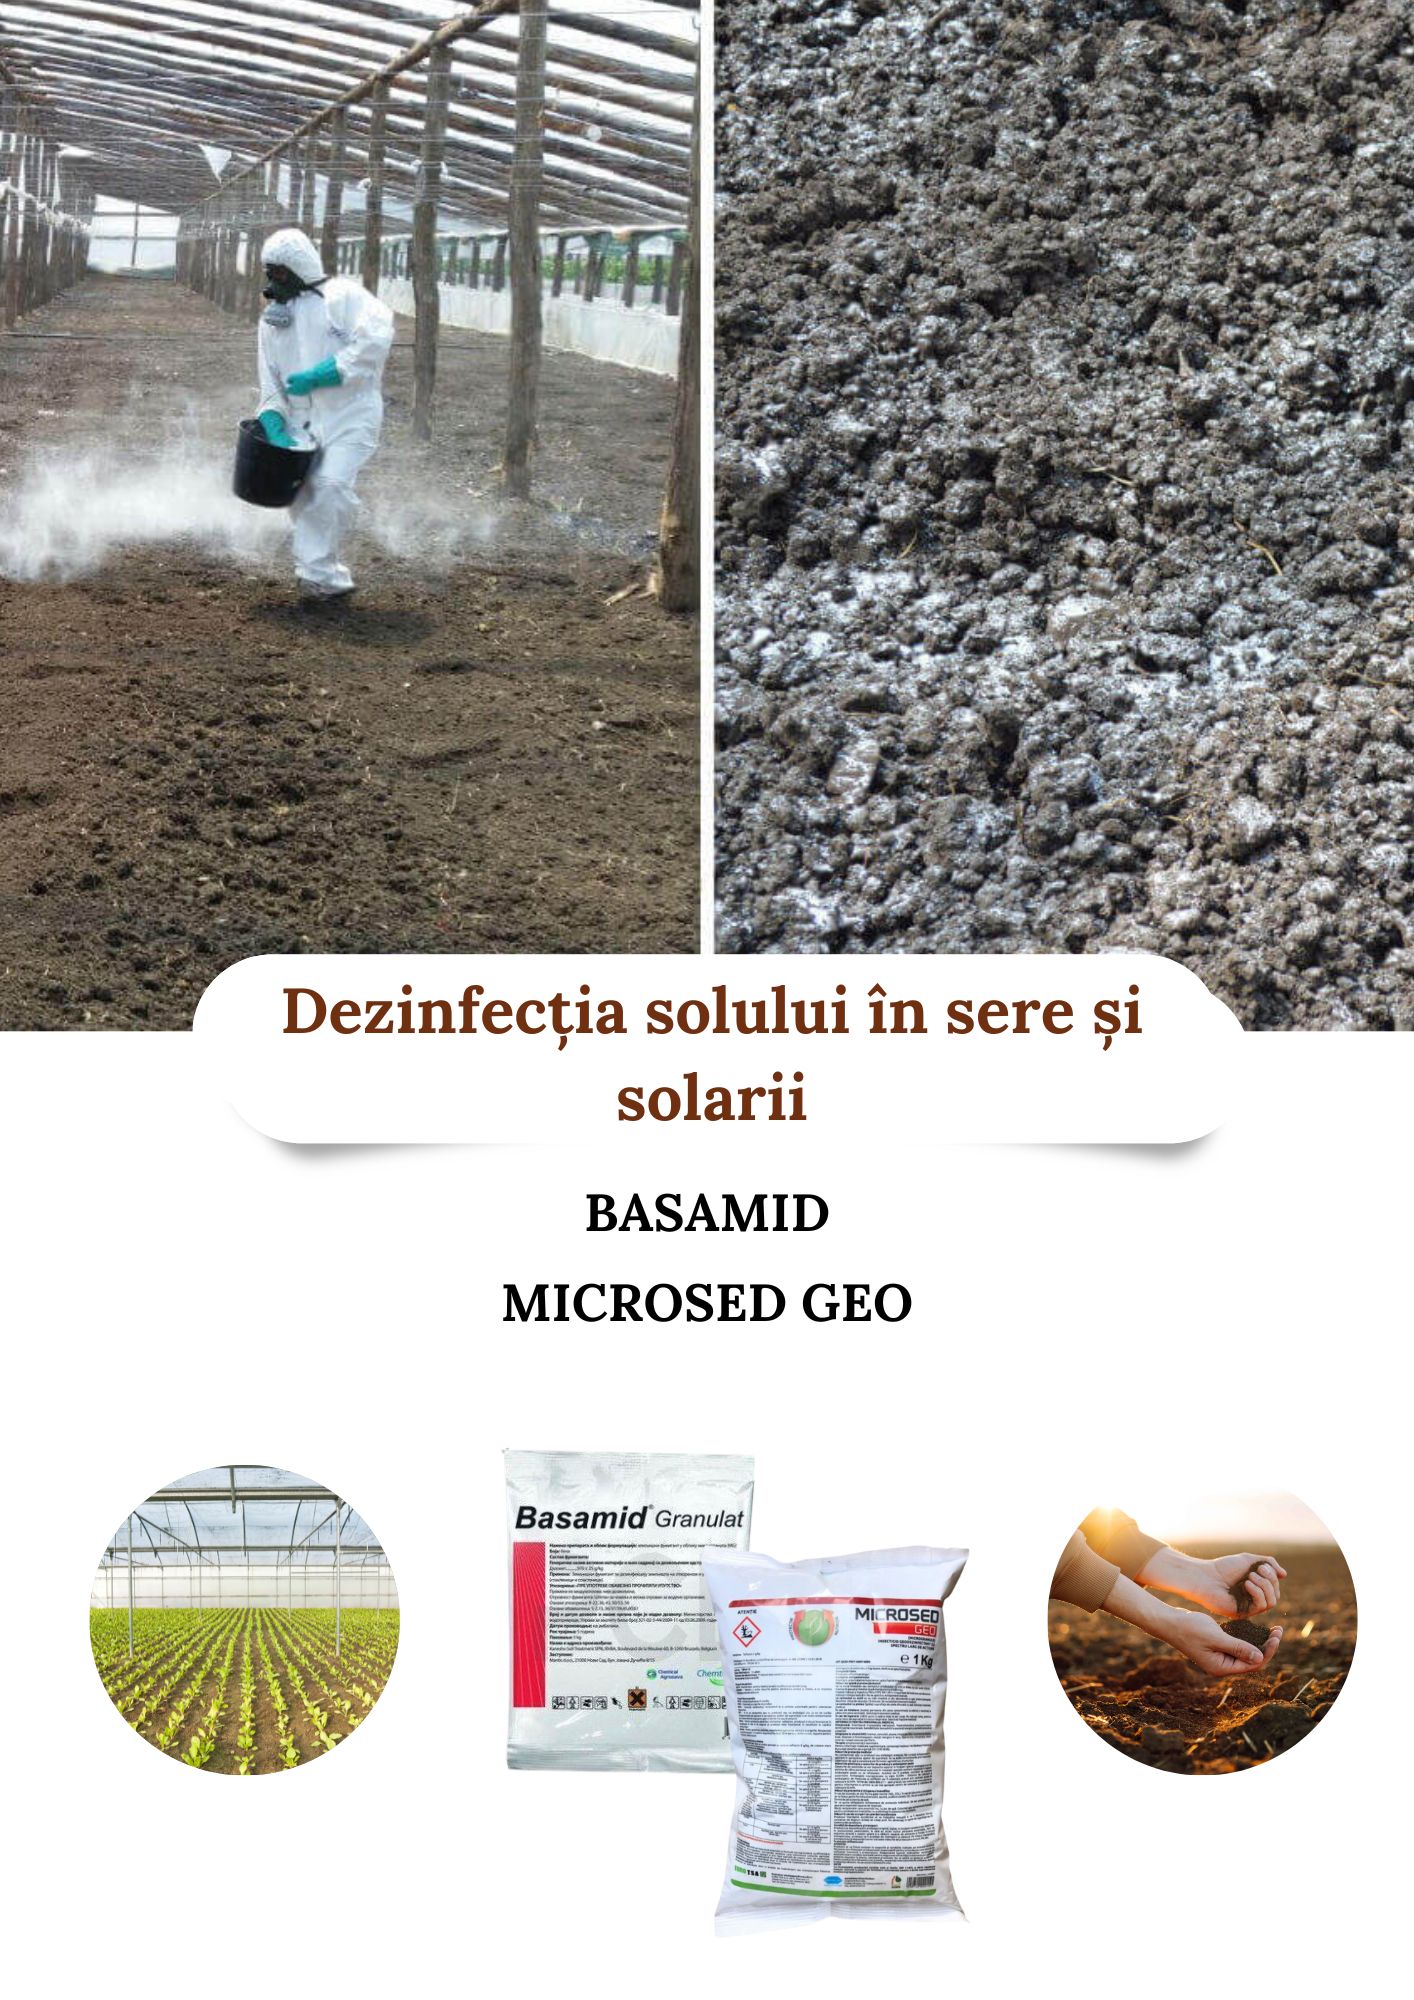 Dezinfeția solului